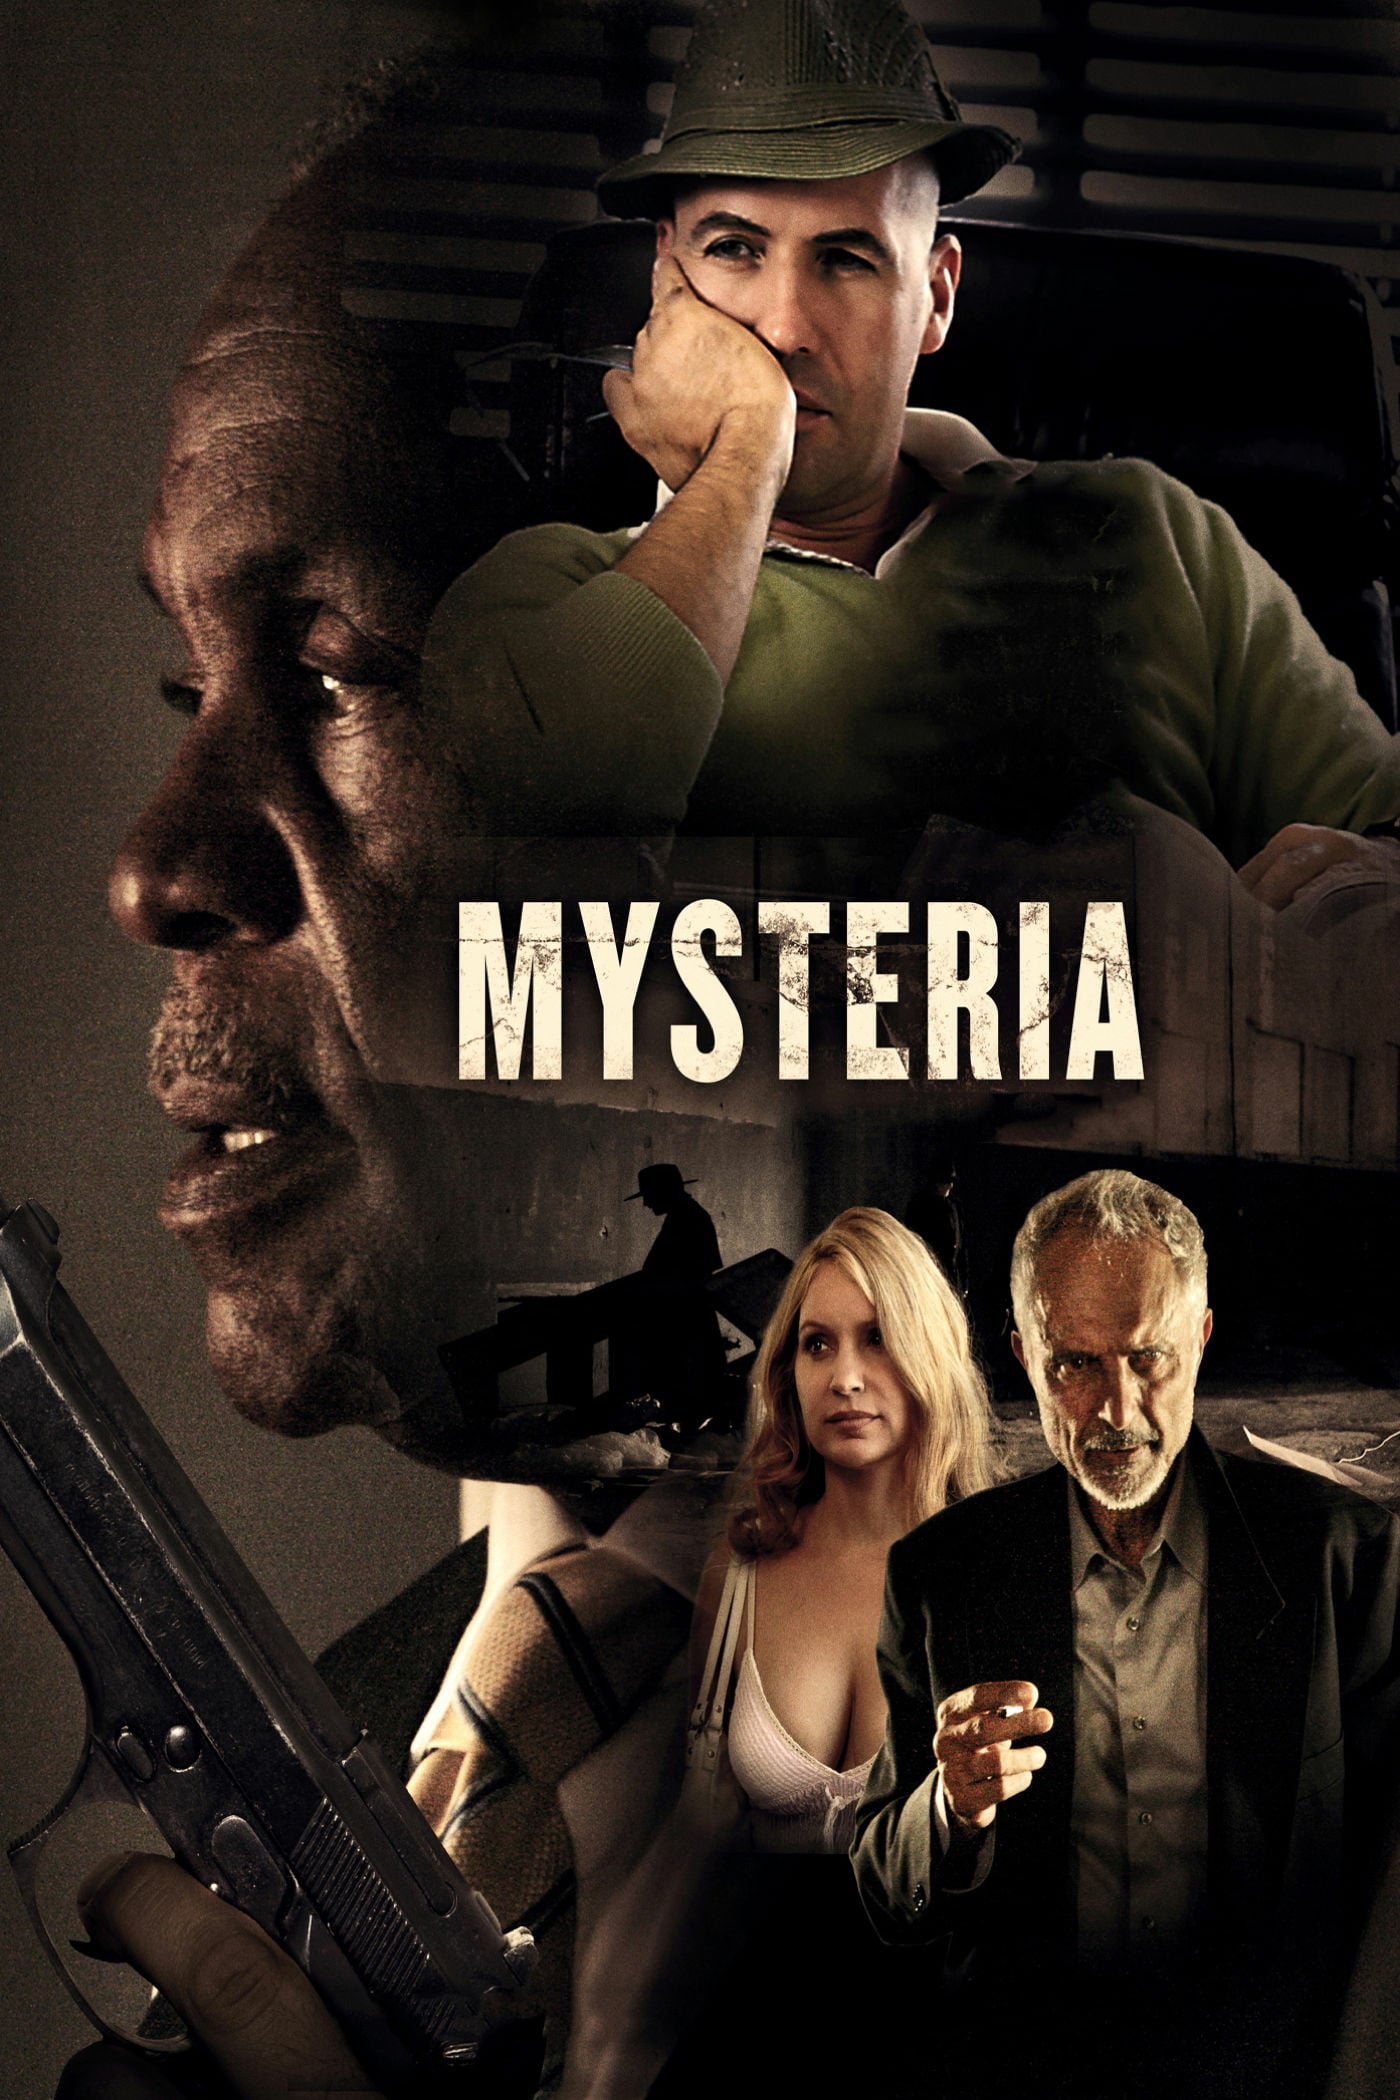 Plakat von "Mysteria"